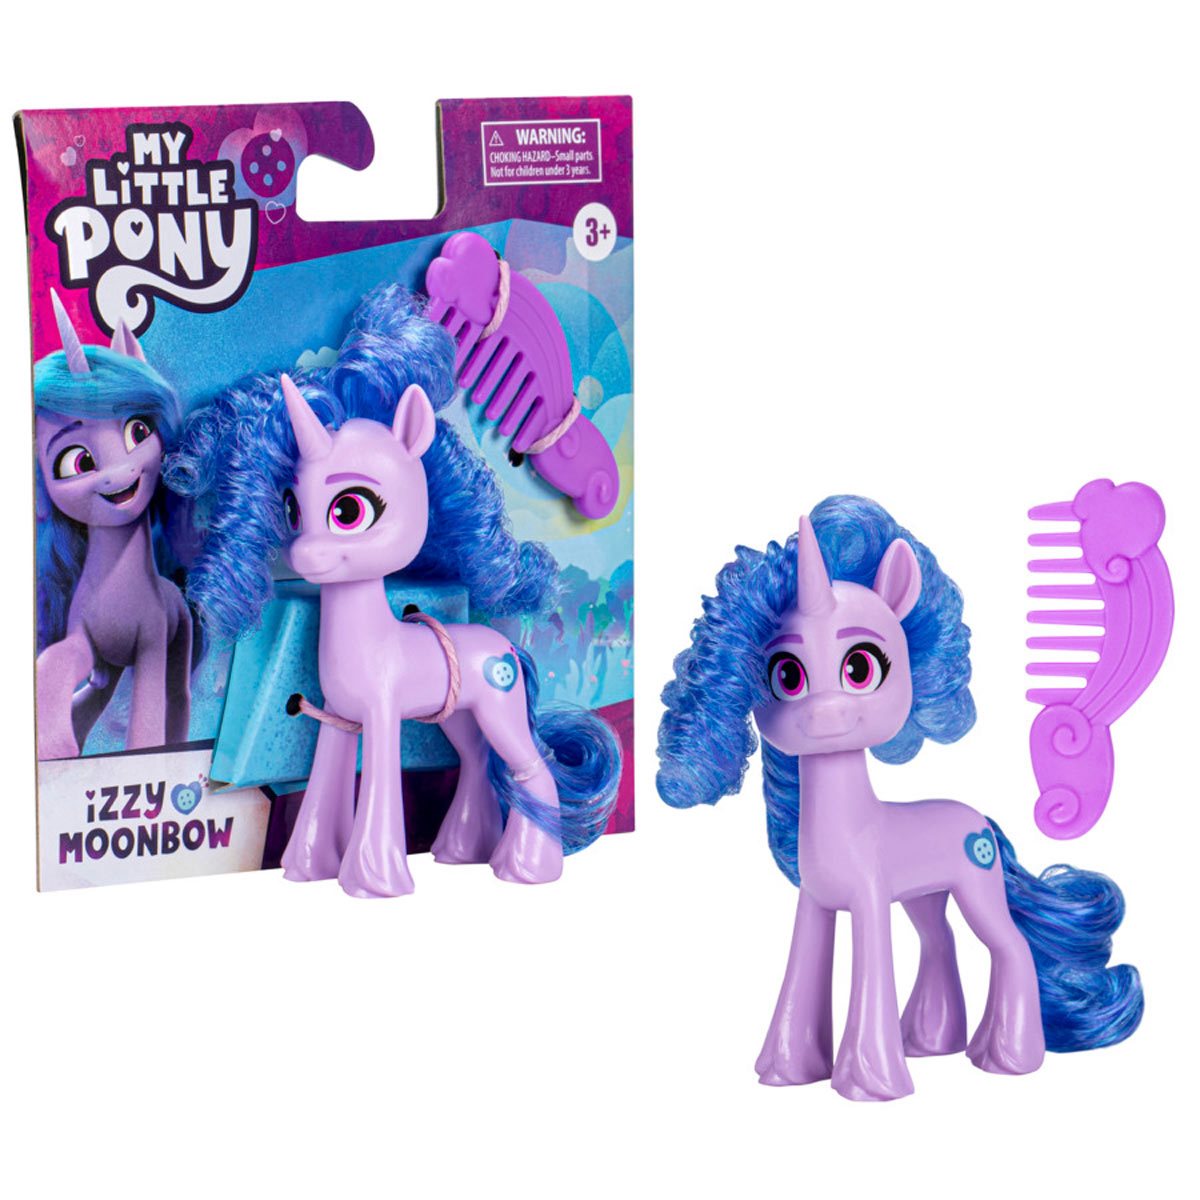 My Little Pony Pony Friends Mini-Figures - Izzy Moonbow